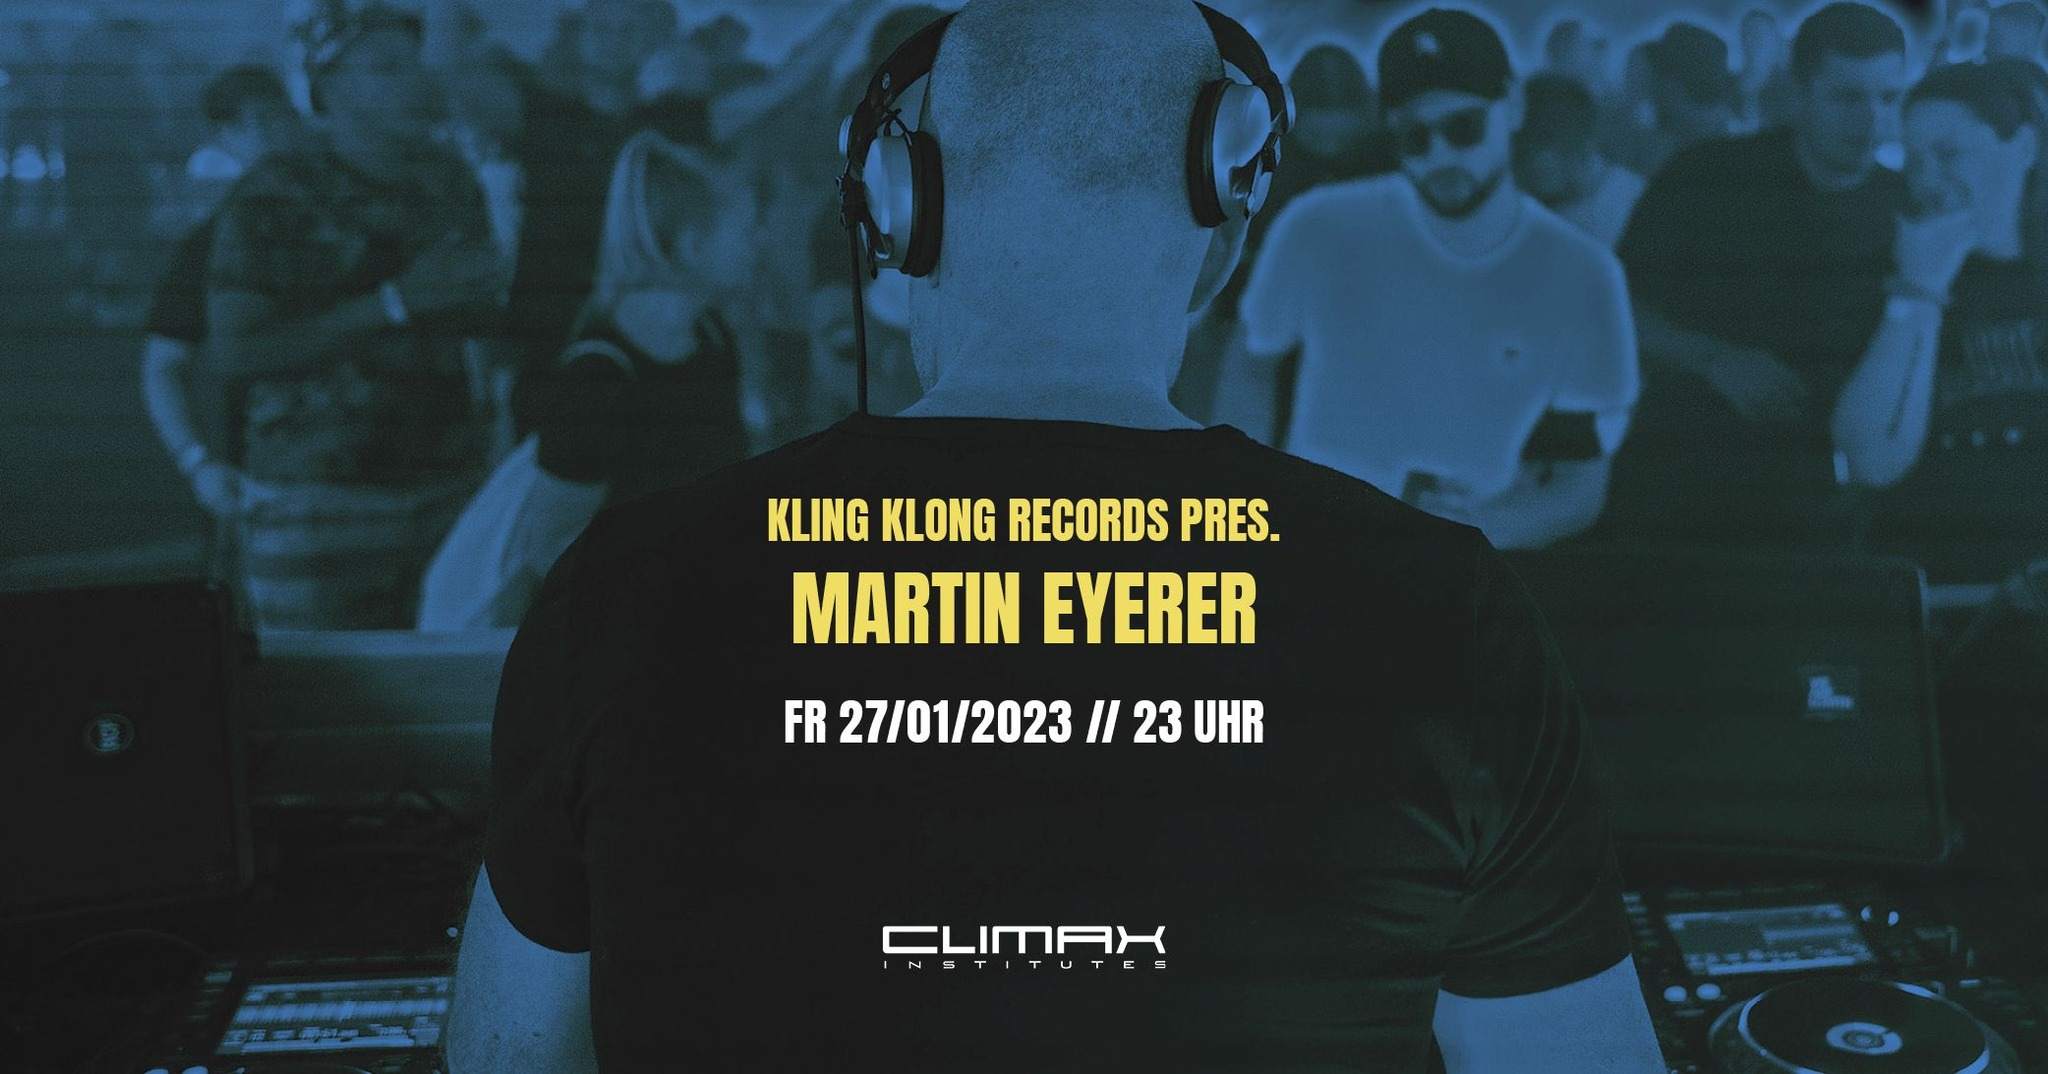 KLING KLONG RECORDS pres. Martin Eyerer - フライヤー表